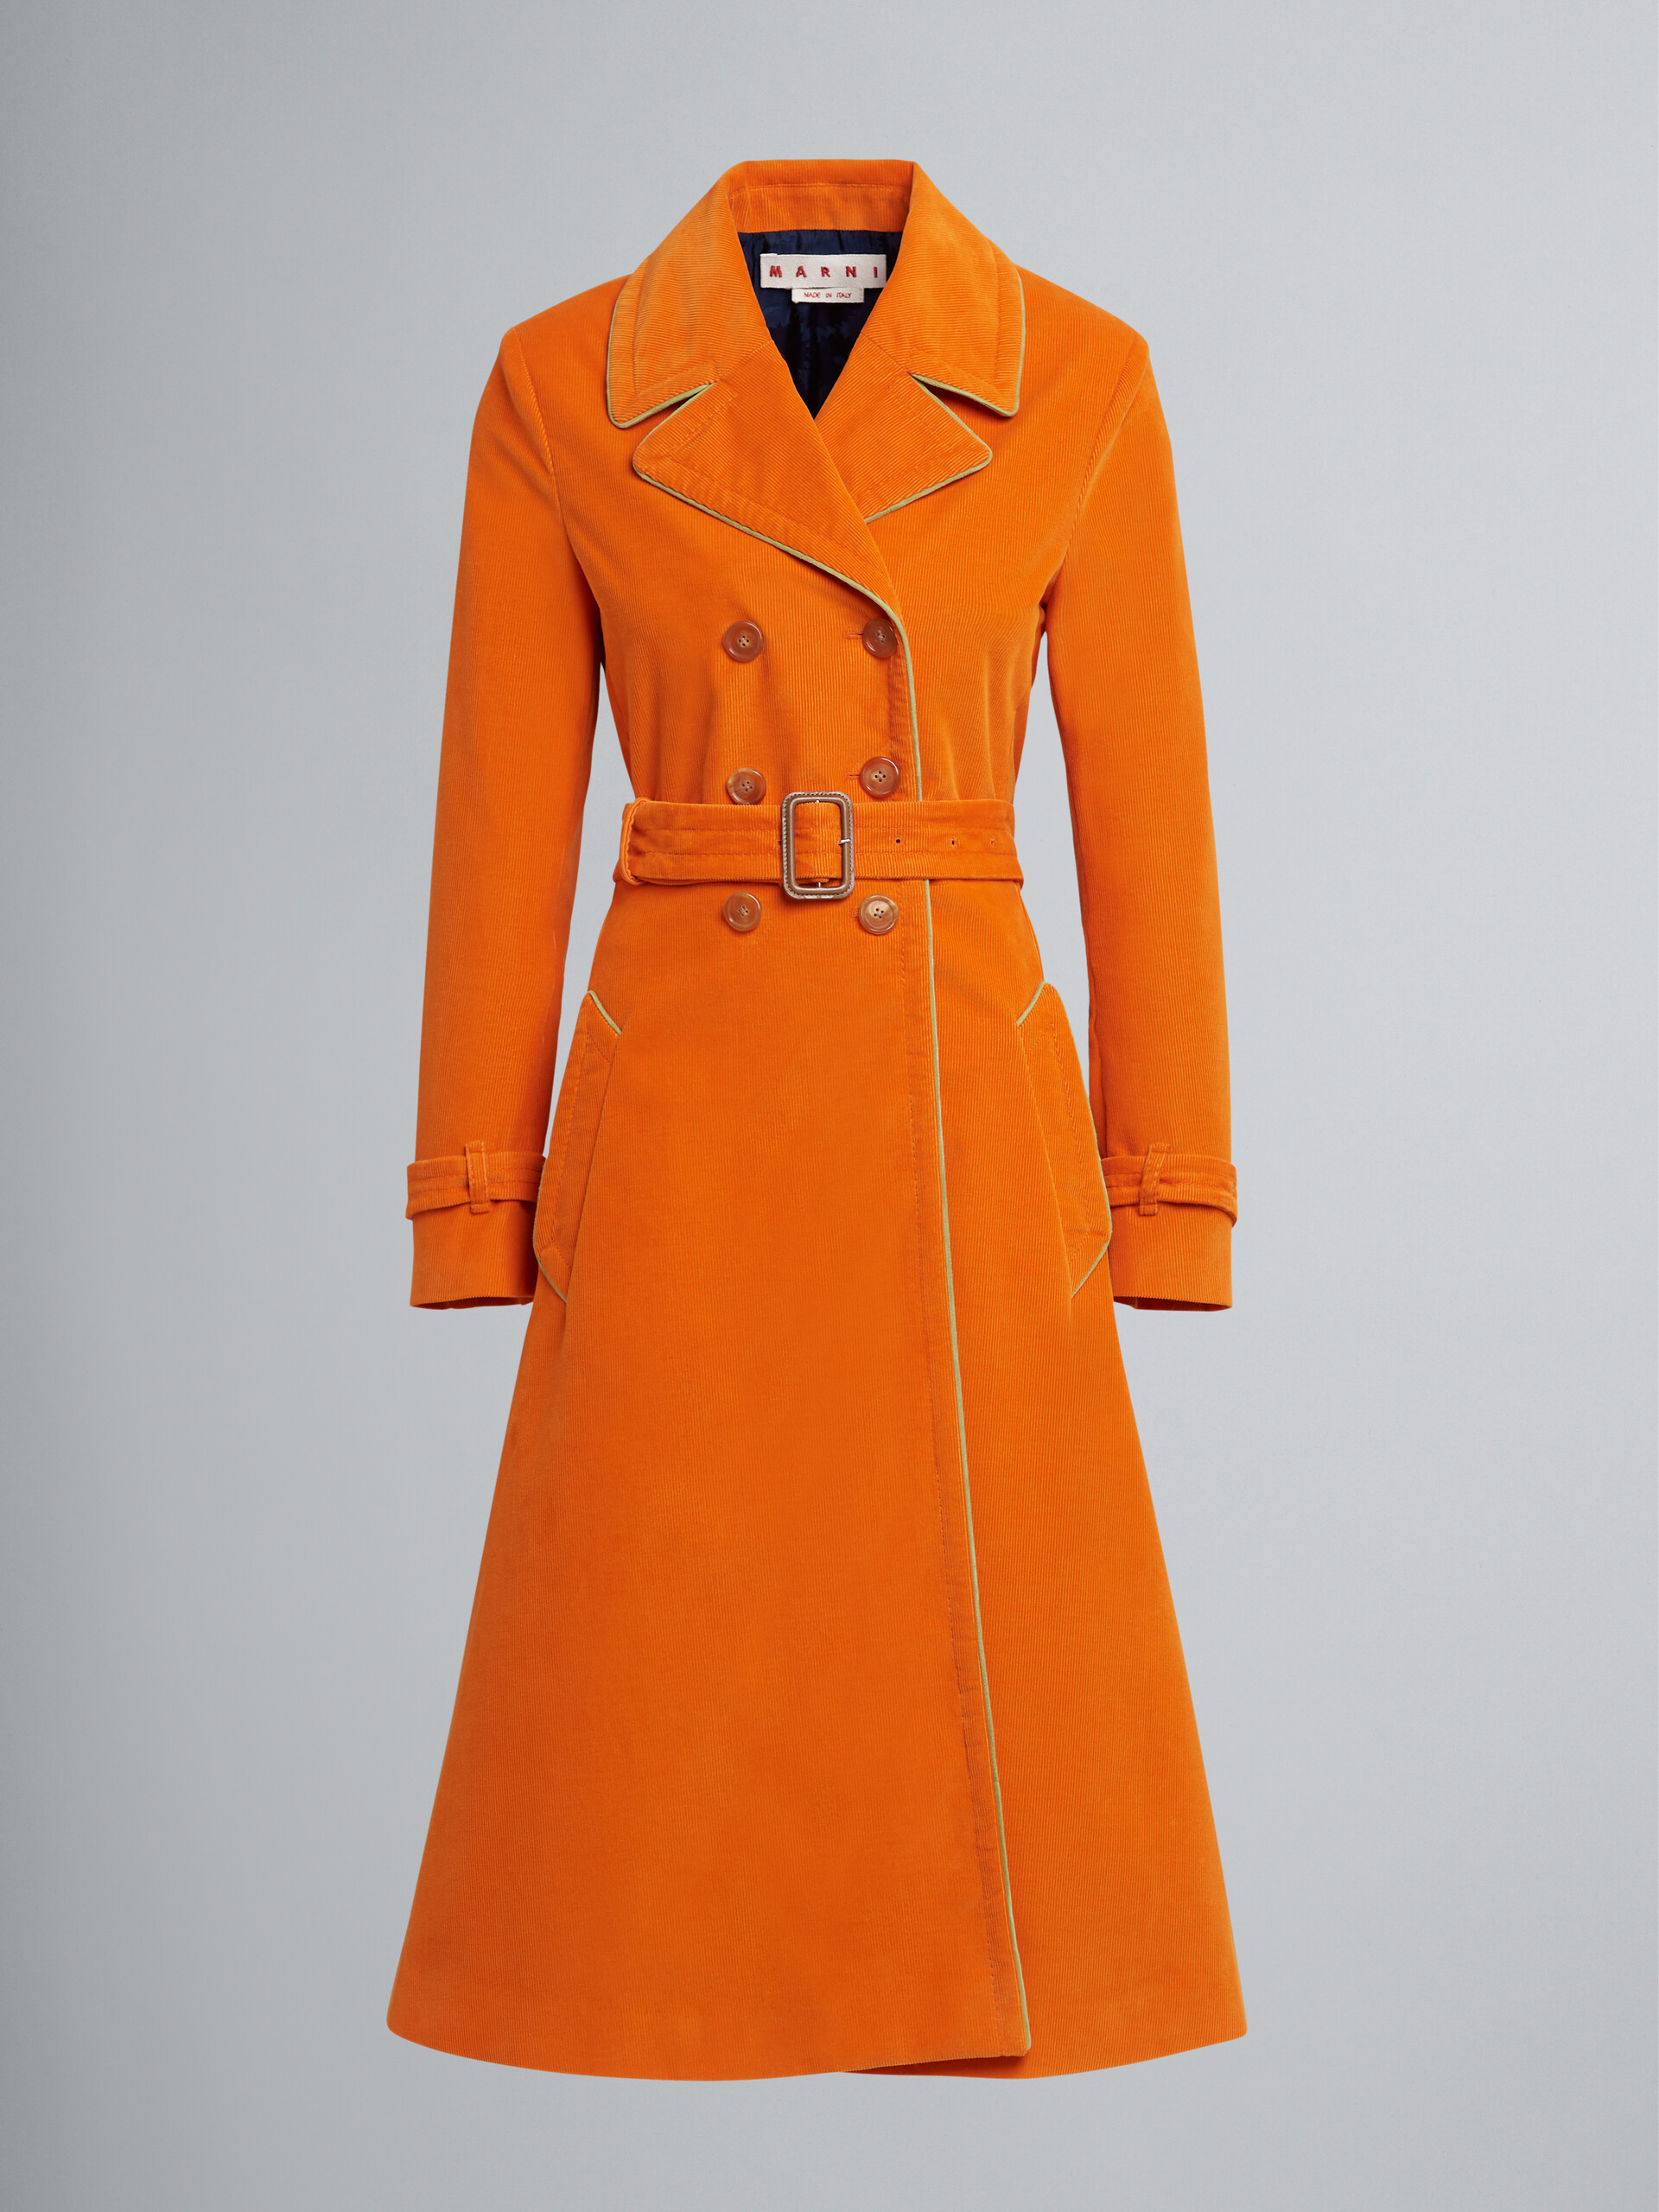 Fine wale corduroy coat - Coats - Image 1